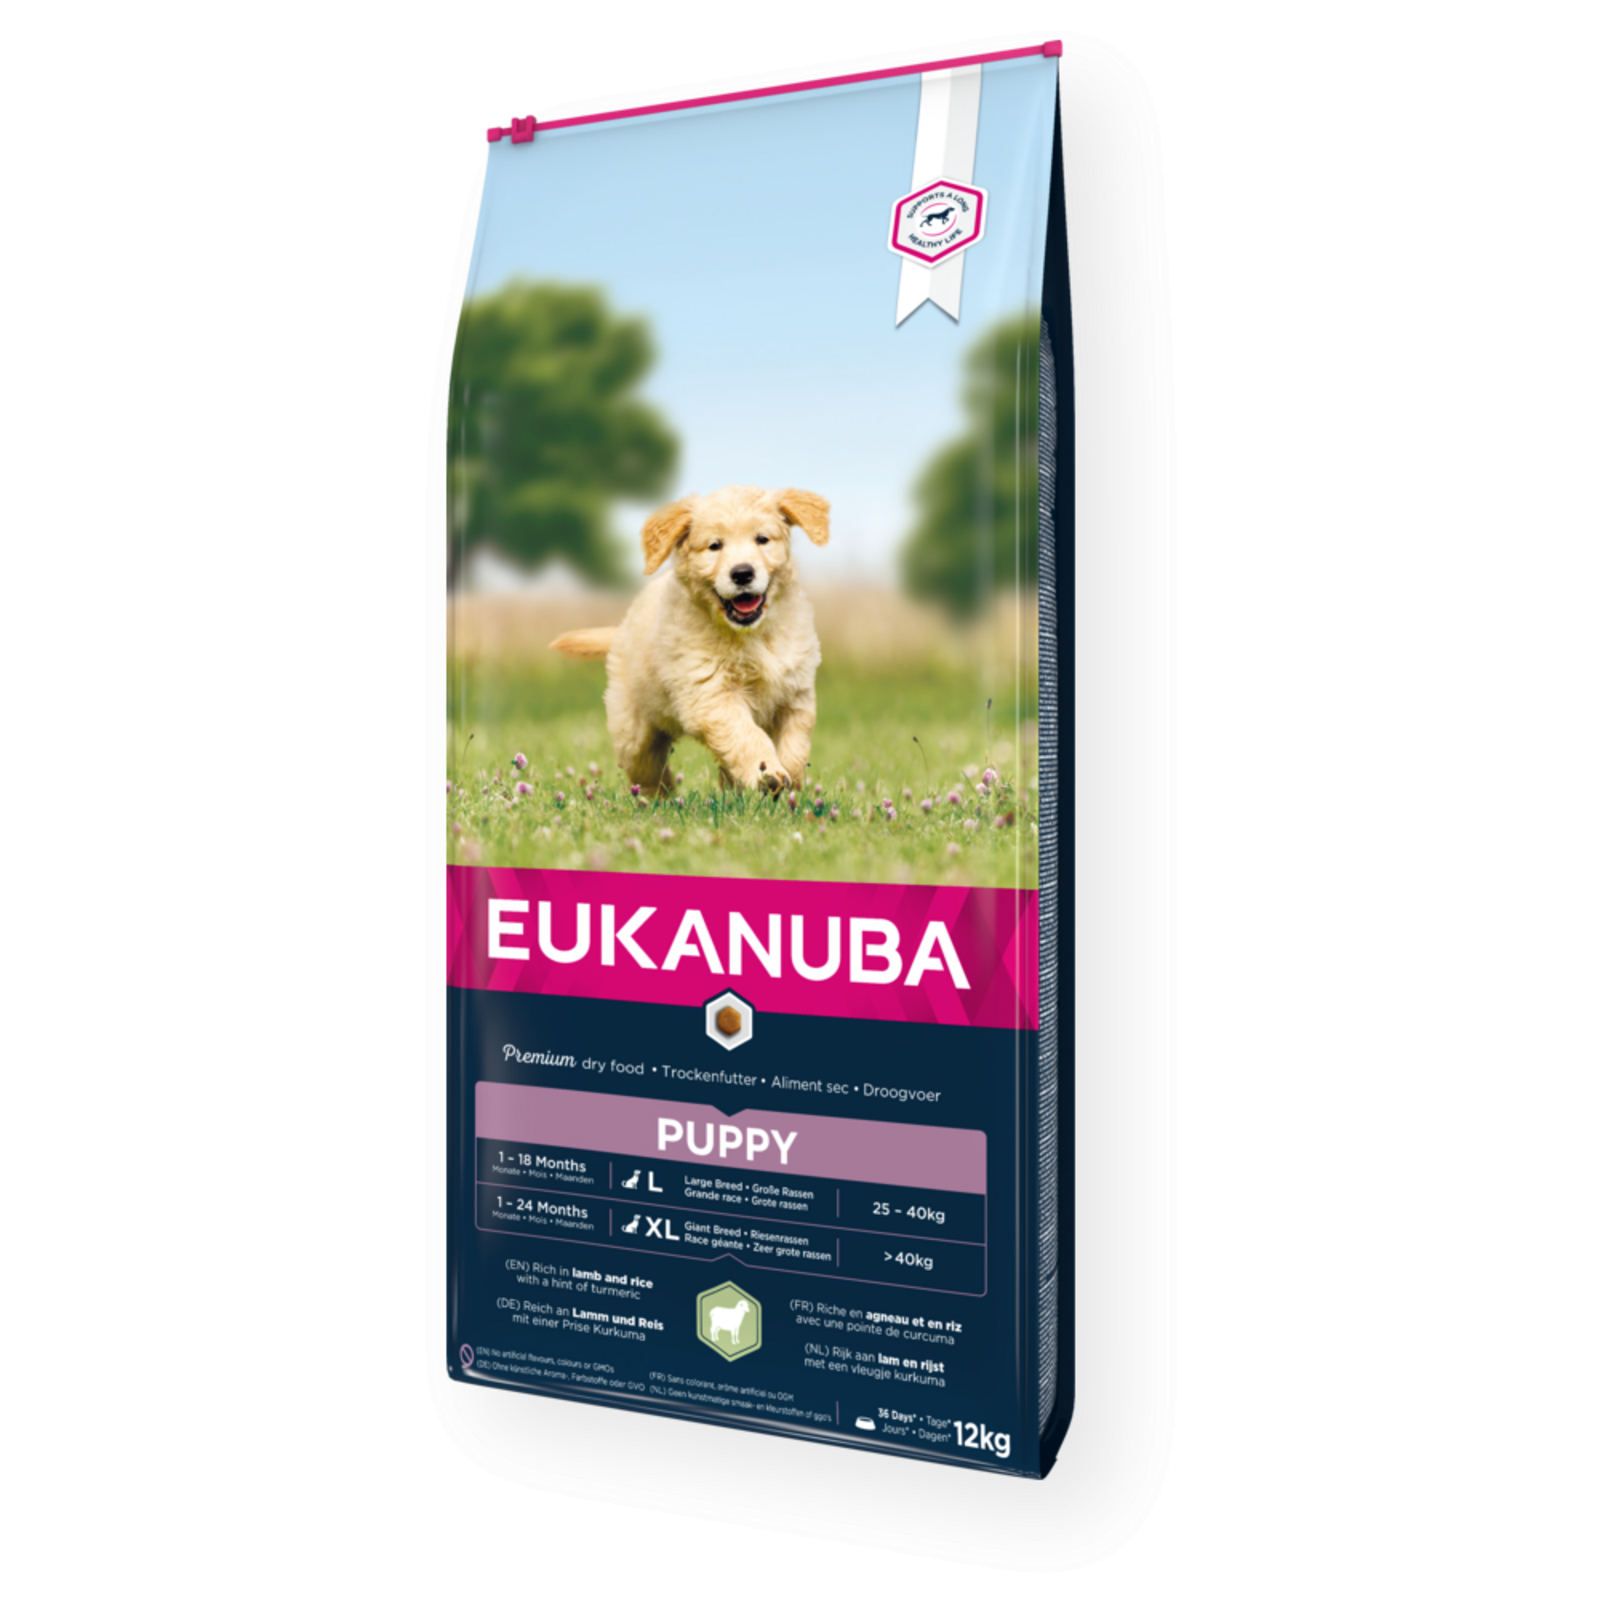 Eukanuba Puppy Pienso para cachorros de razas grandes con cordero y arroz